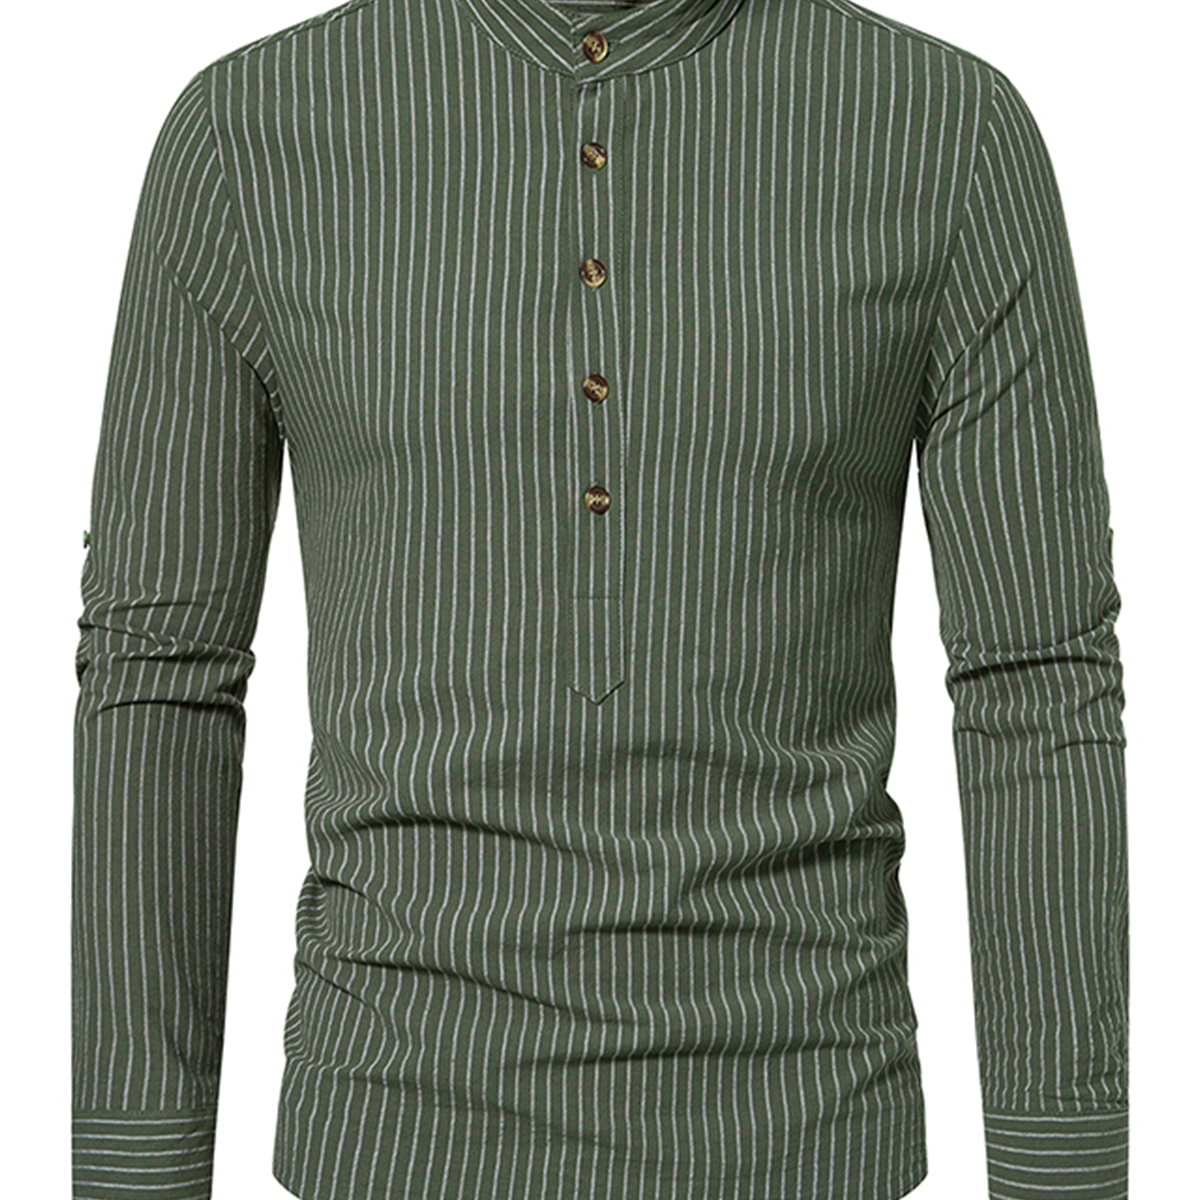 Men's Cotton Vertical Striped Henley Collar Long Sleeve Shirt